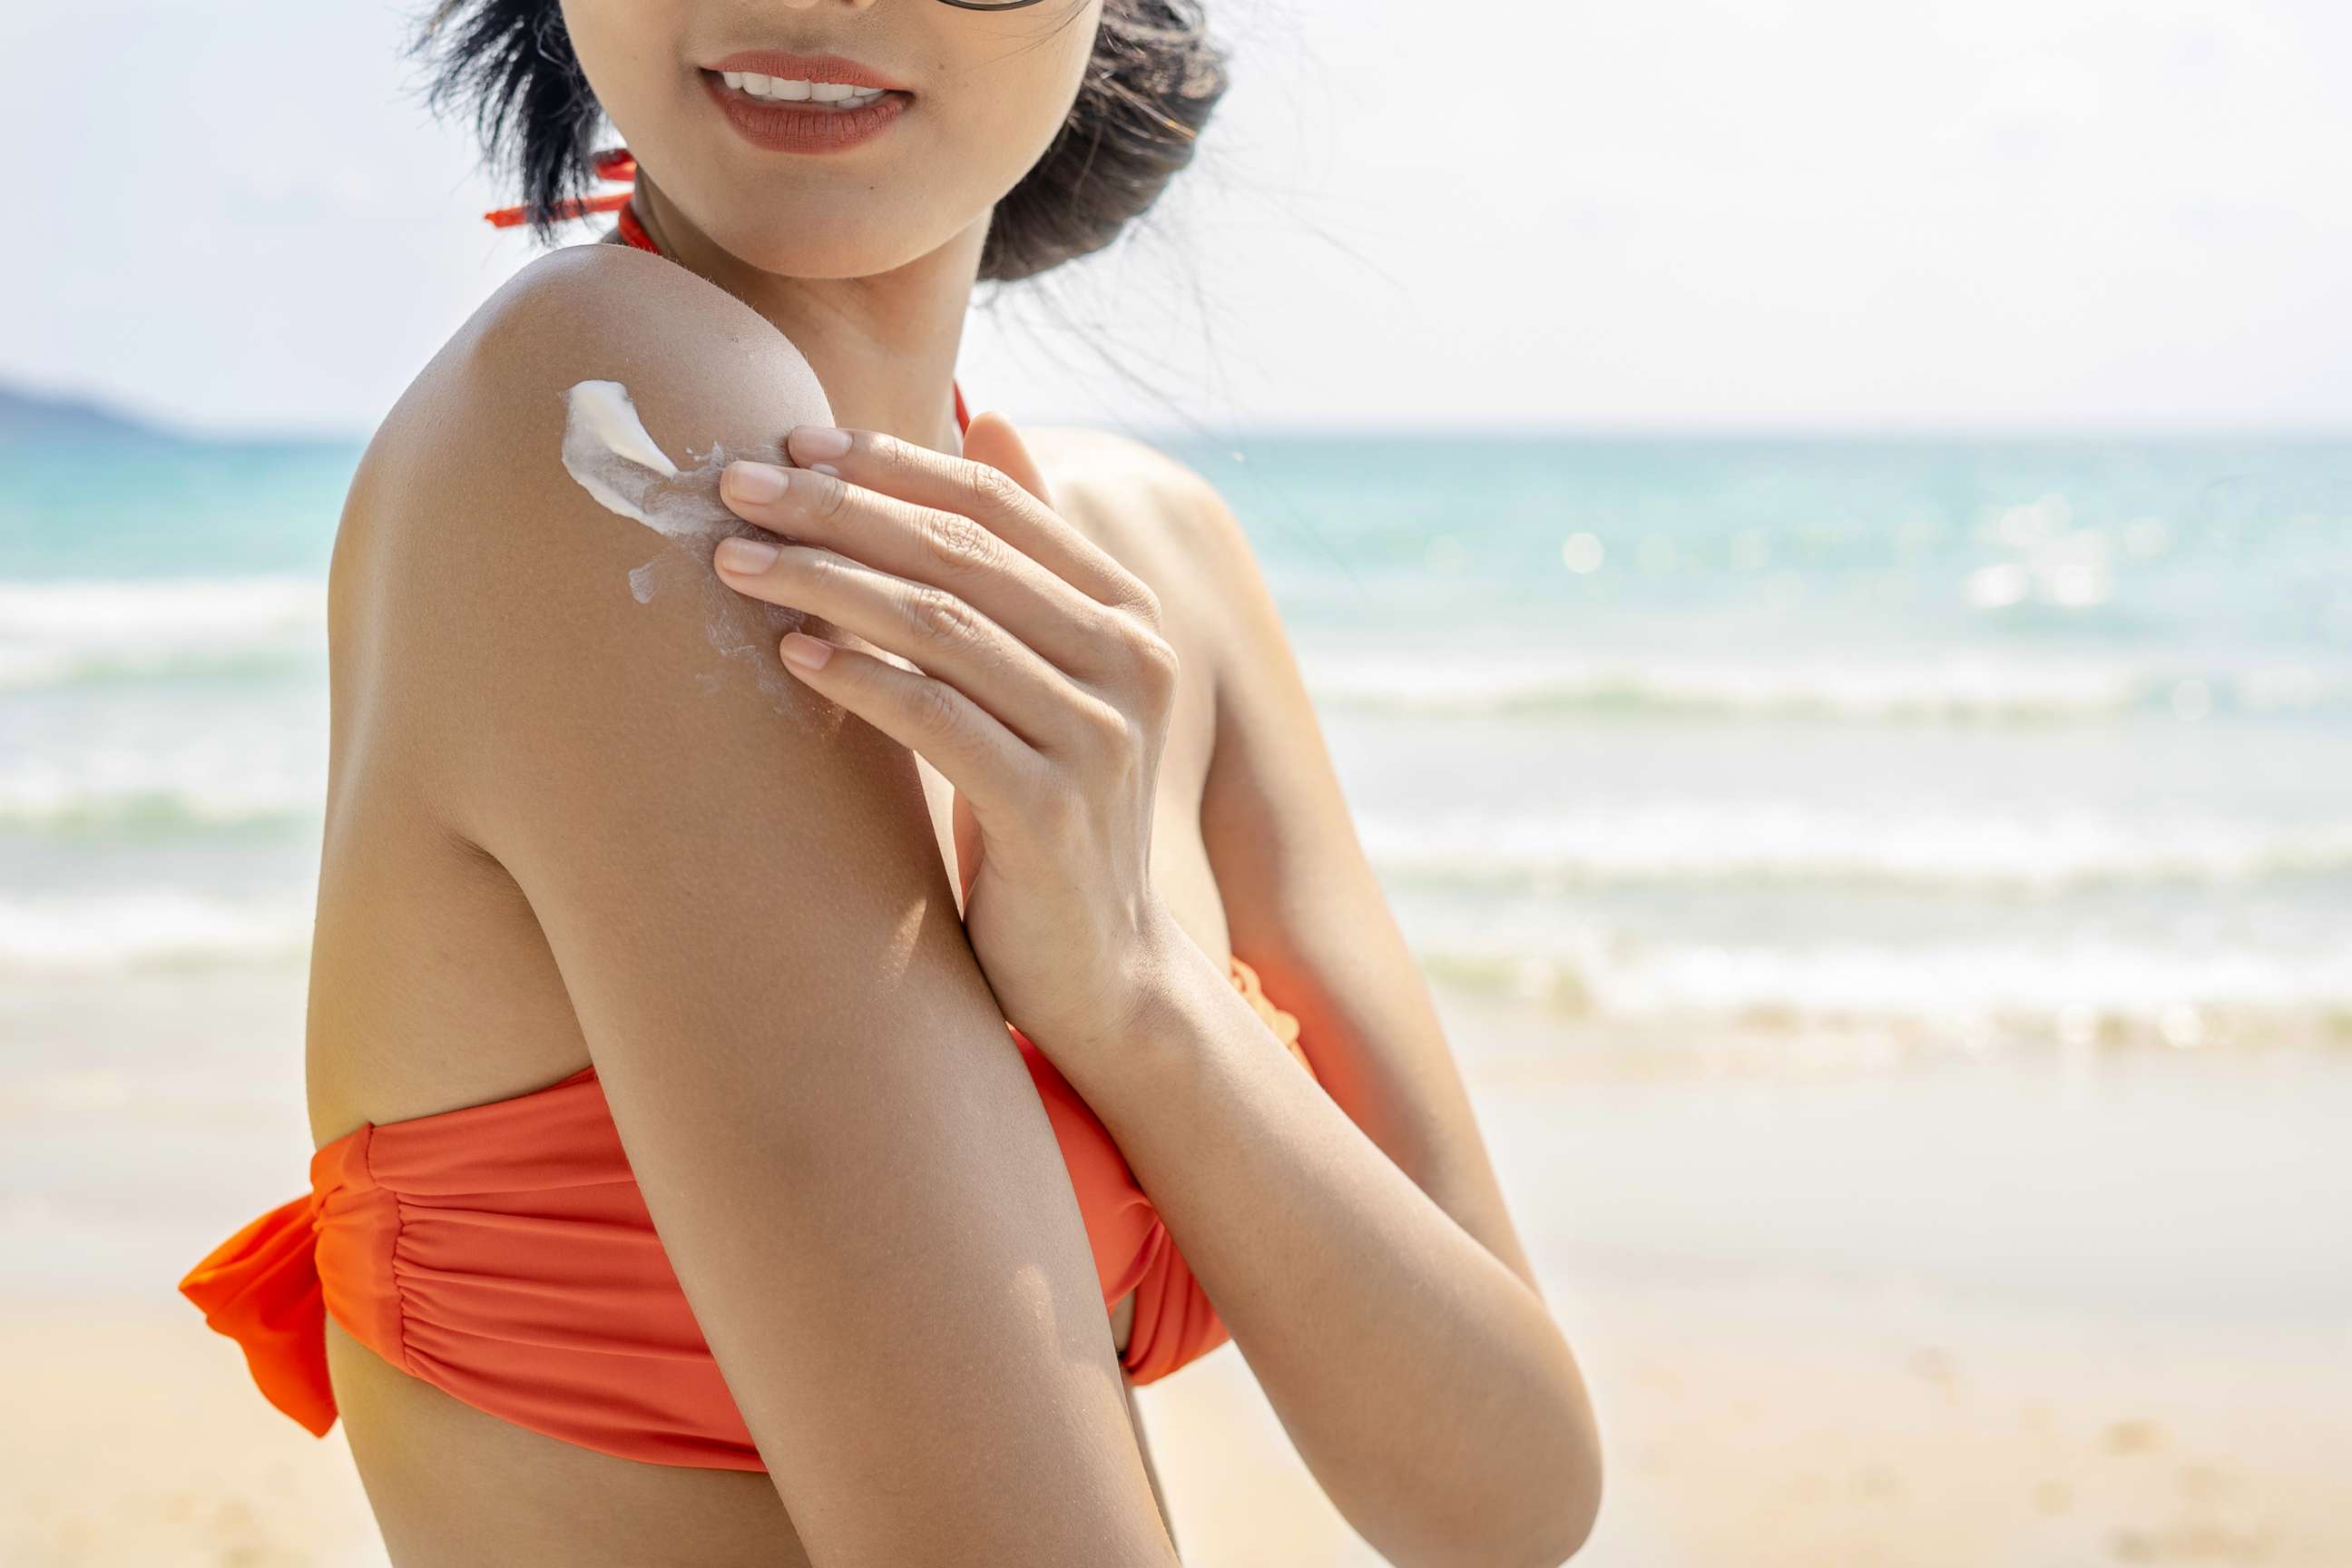 PHOTO: A woman applies sunscreen at the beach.